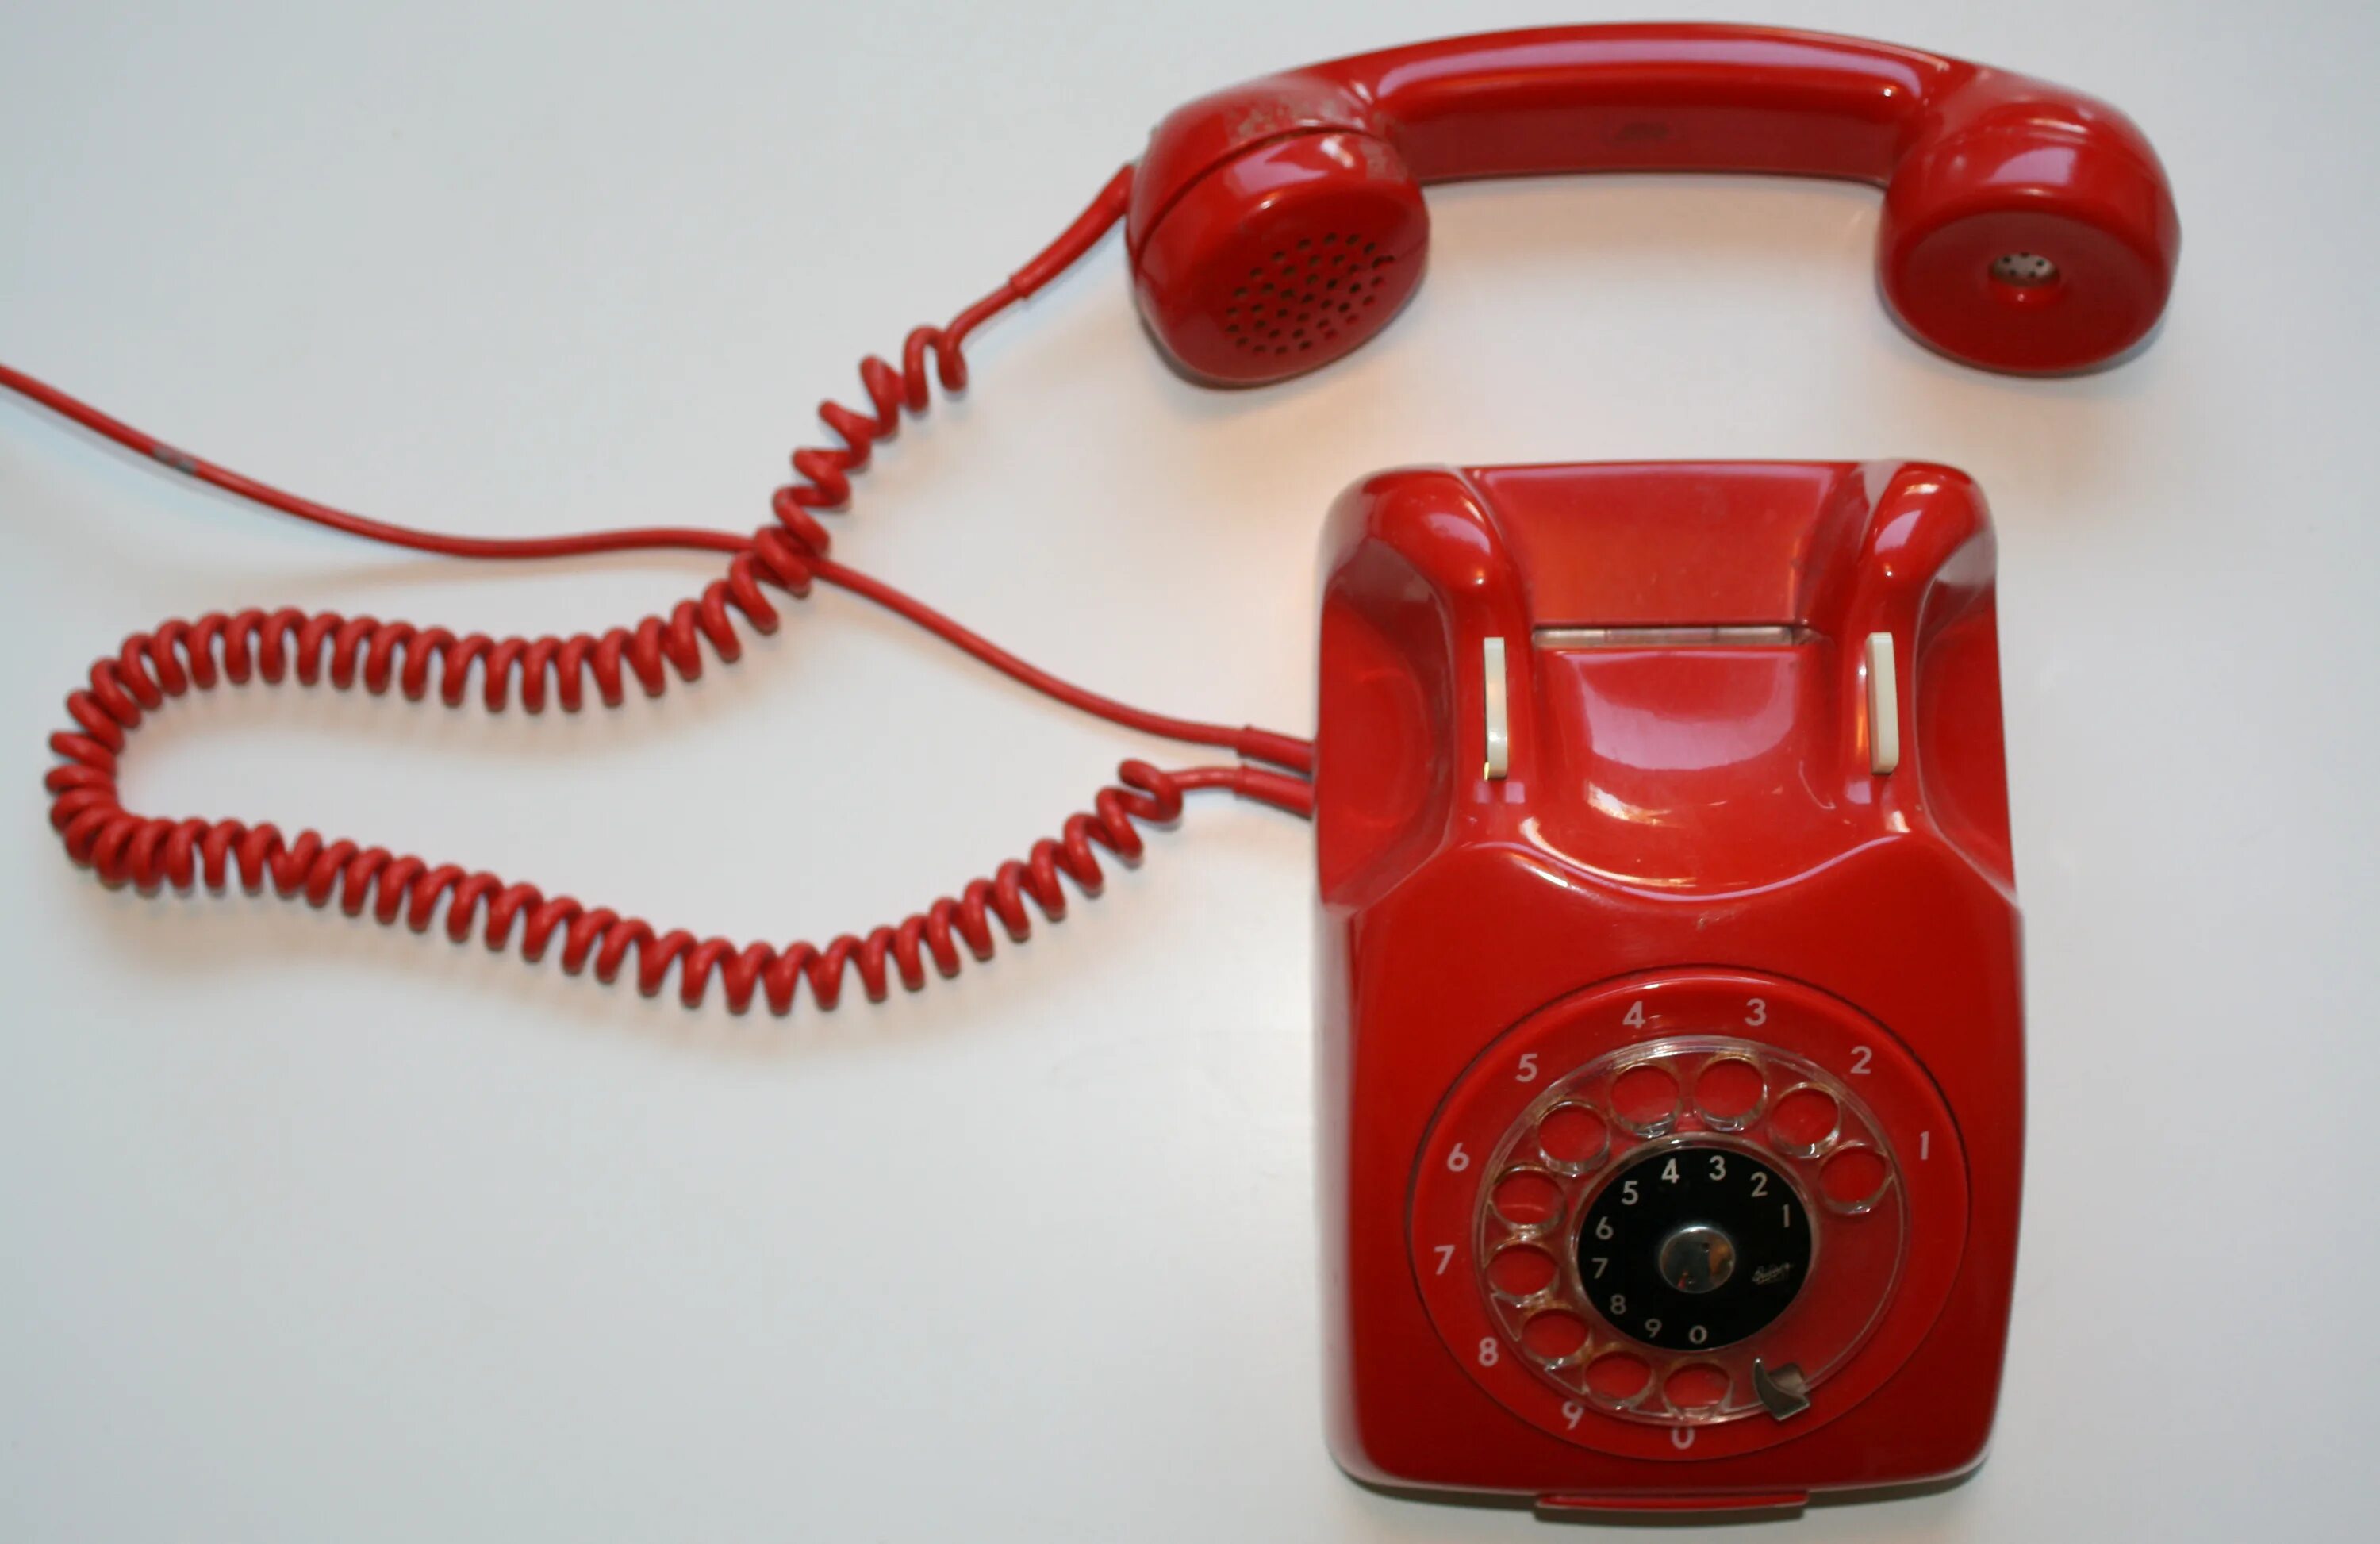 Красный телефон 12. Красный телефон. Красный телефон современный. Телефон Alcatel красный старый. Красная телефонная трубка ретро.